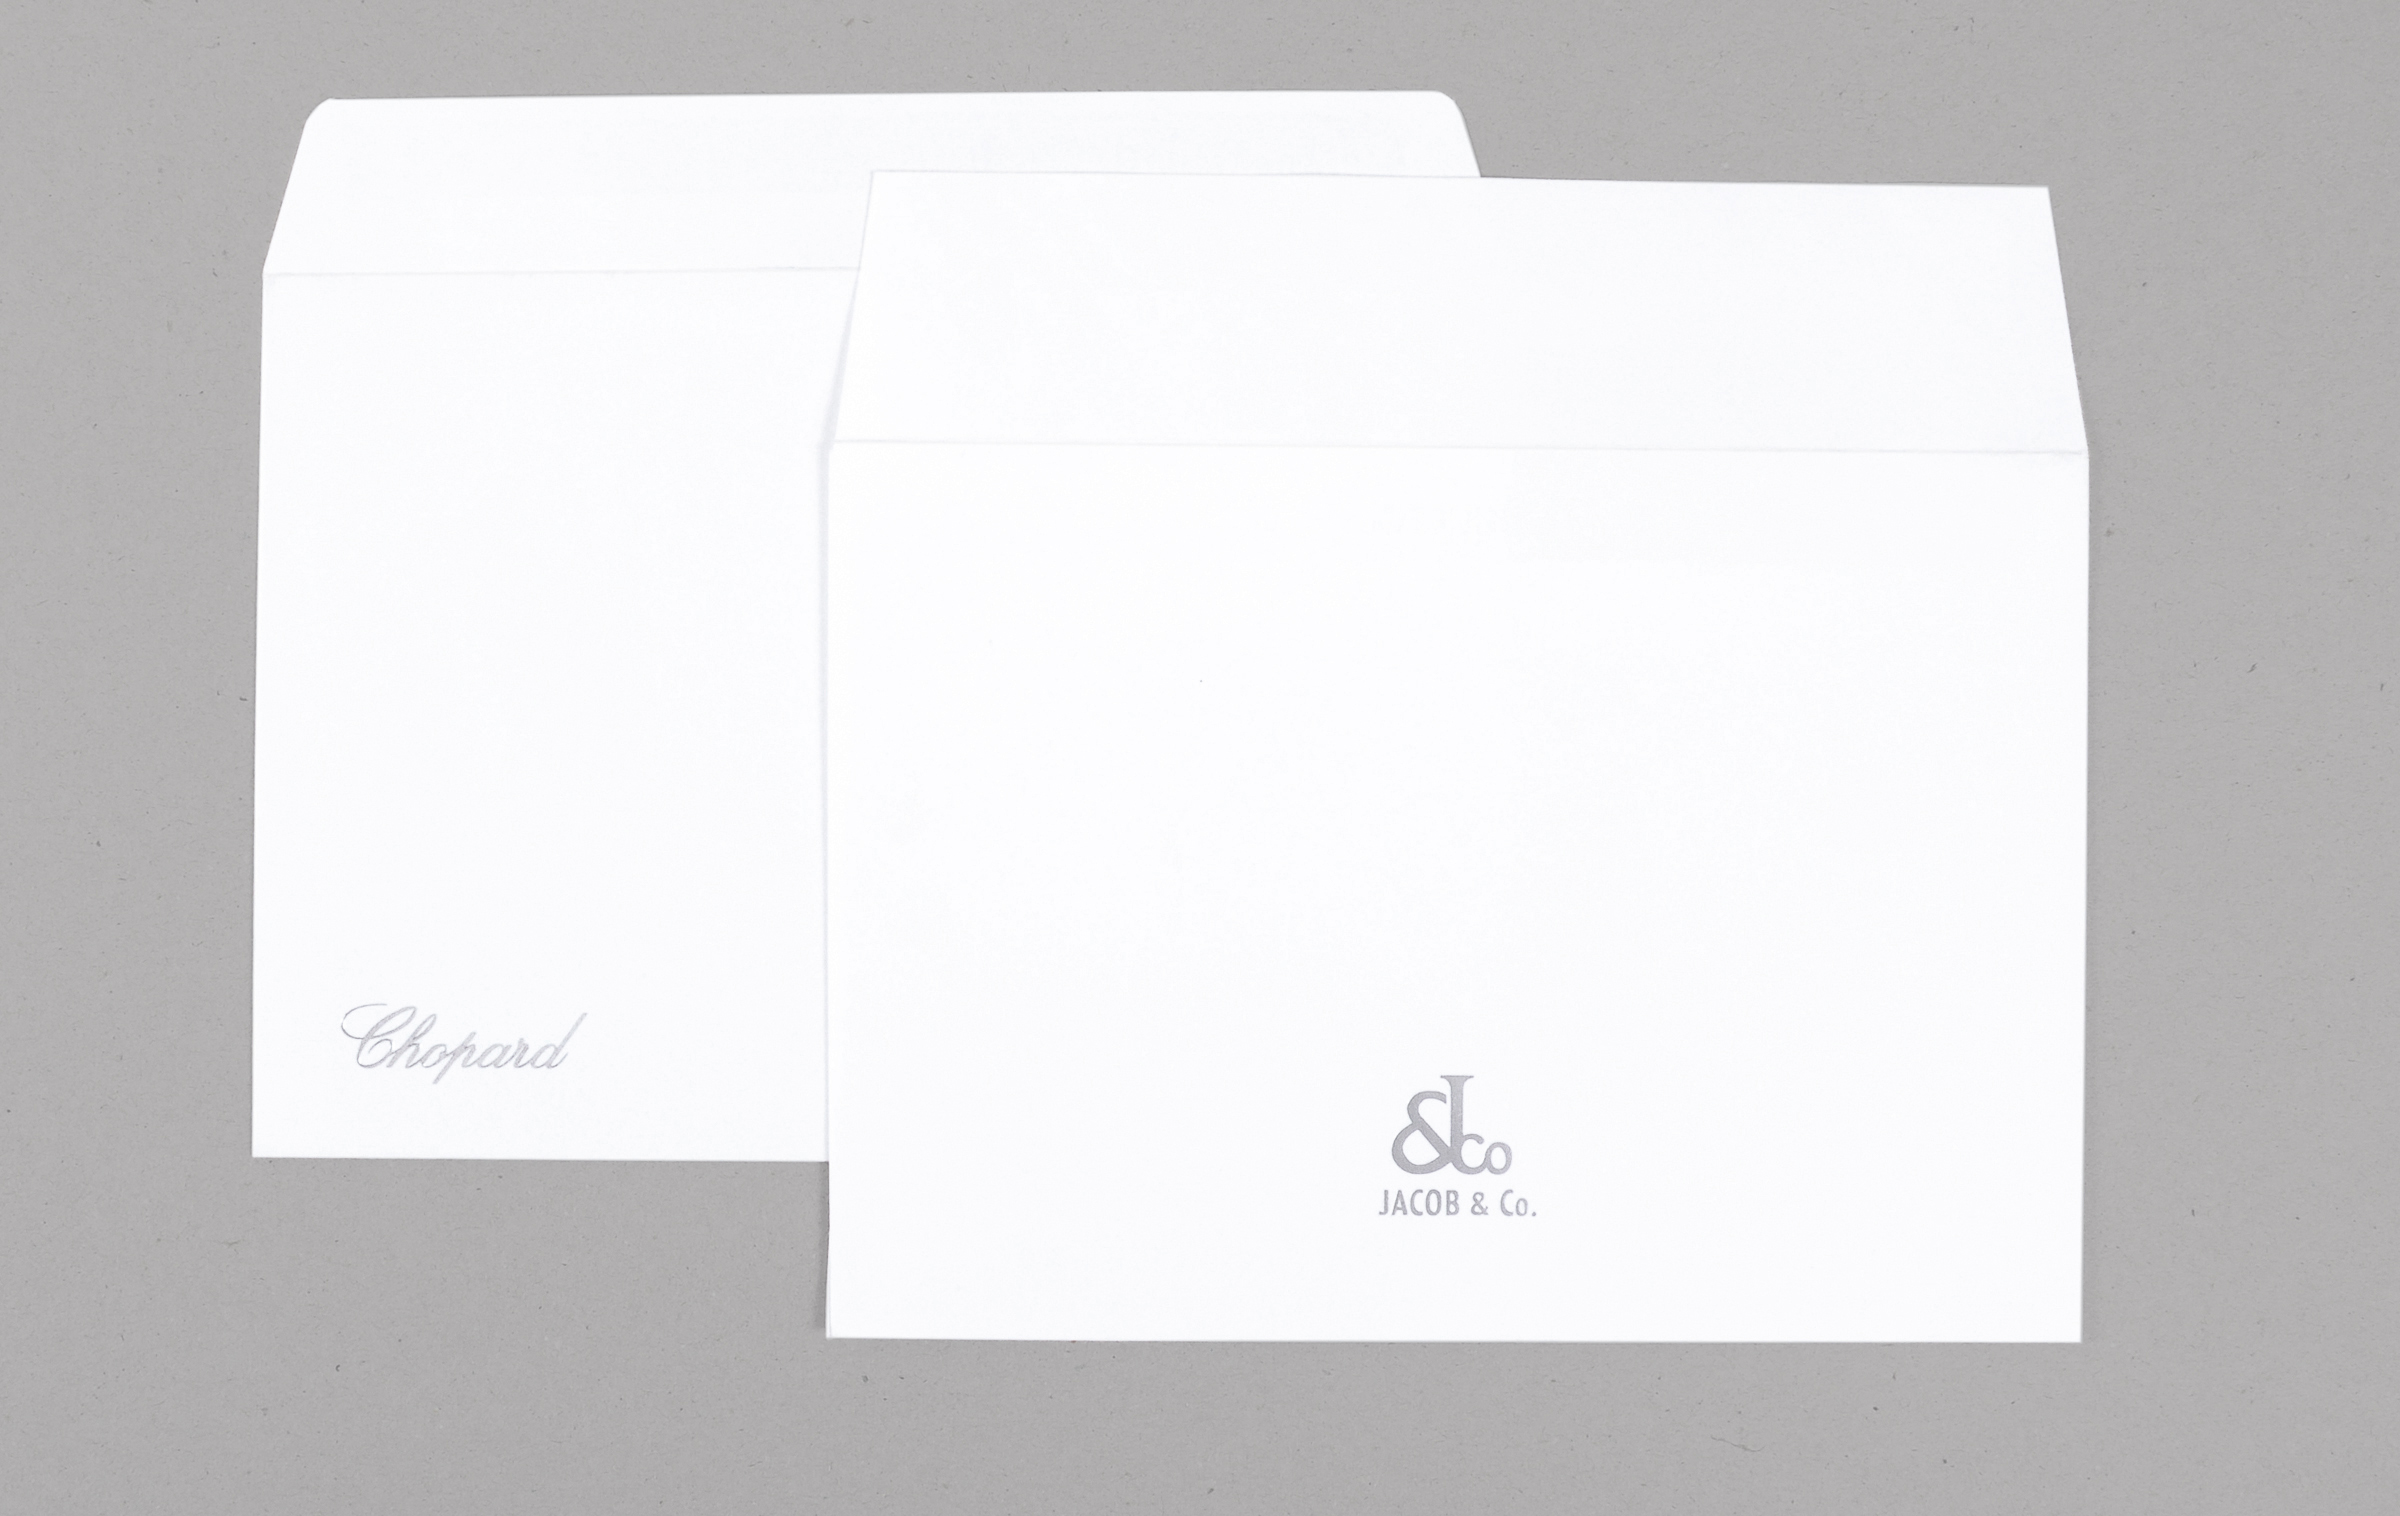 Стильное решение для изготовление фирменных конвертов премиум-класса - брендирование готовых конвертов из дизайнерских бумаг тиснением фольгой. Конверты серий Conqueror и Munchen, тиснение фольгой 